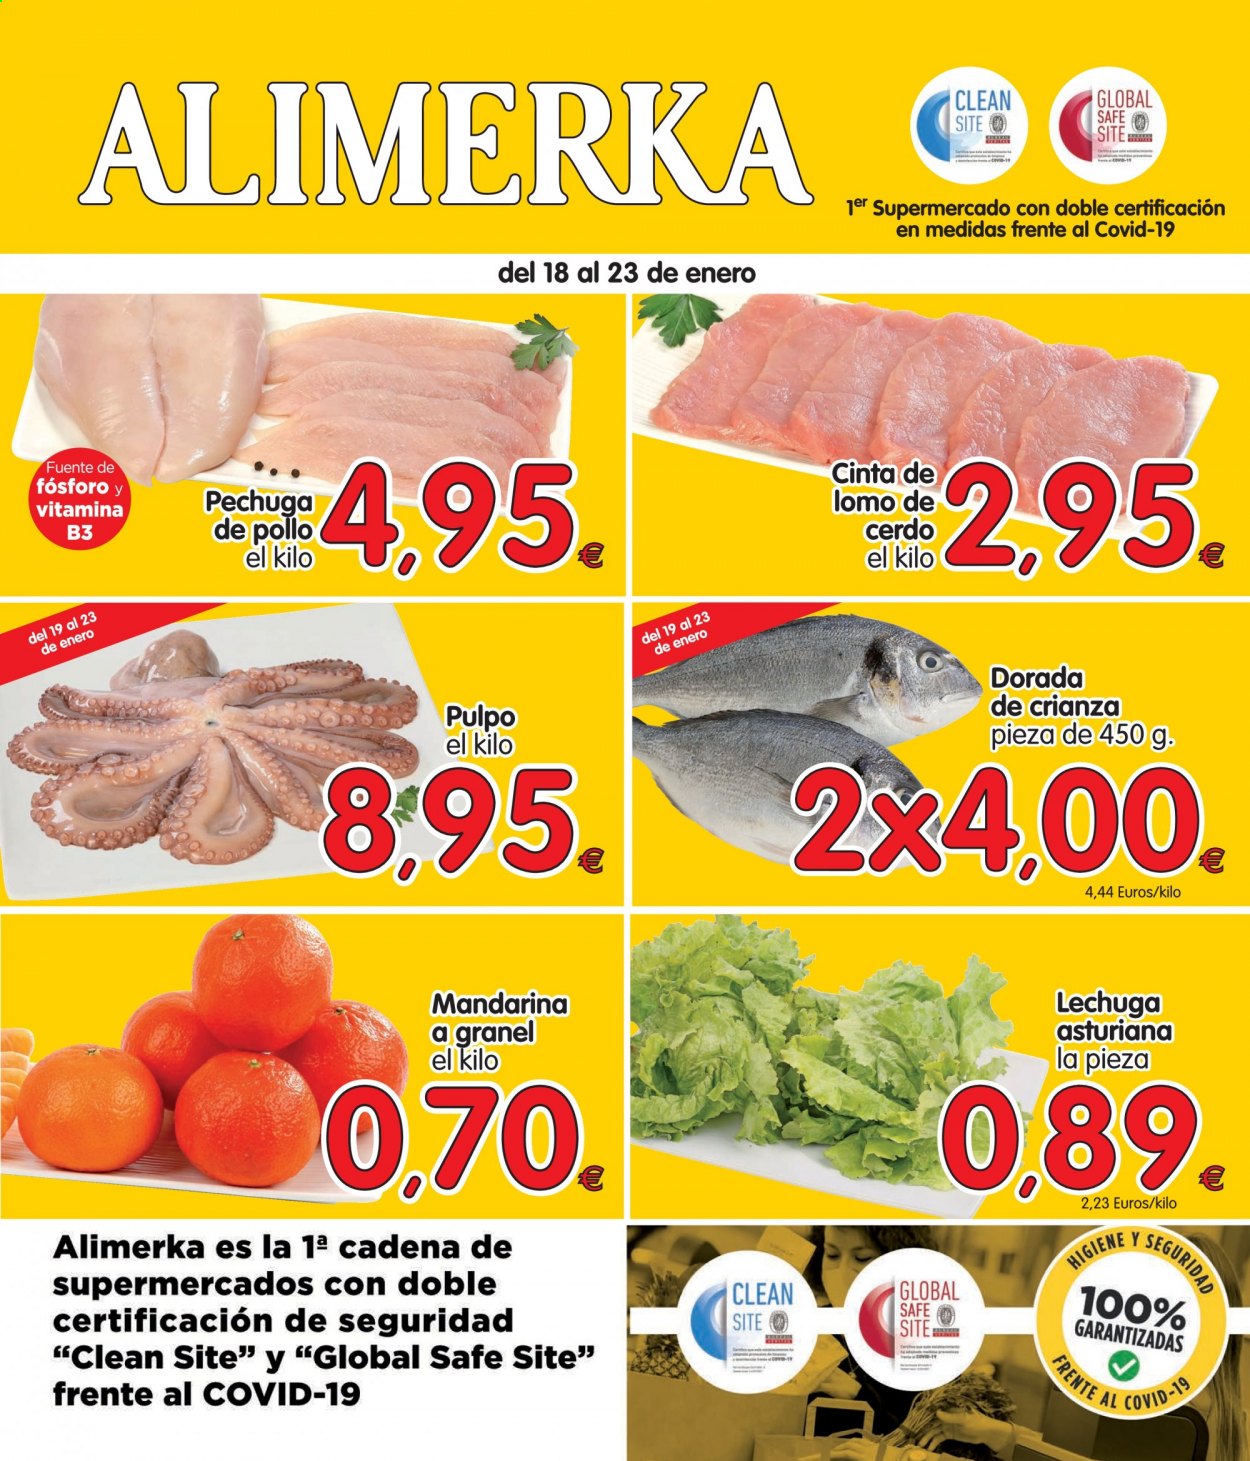 thumbnail - Folleto actual Alimerka - 18/01/21 - 23/01/21 - Ventas - lomo de cerdo, cinta de lomo, pechuga de pollo, pollo, mandarina, lechuga, dorada pescado, pulpo, Crianza. Página 1.